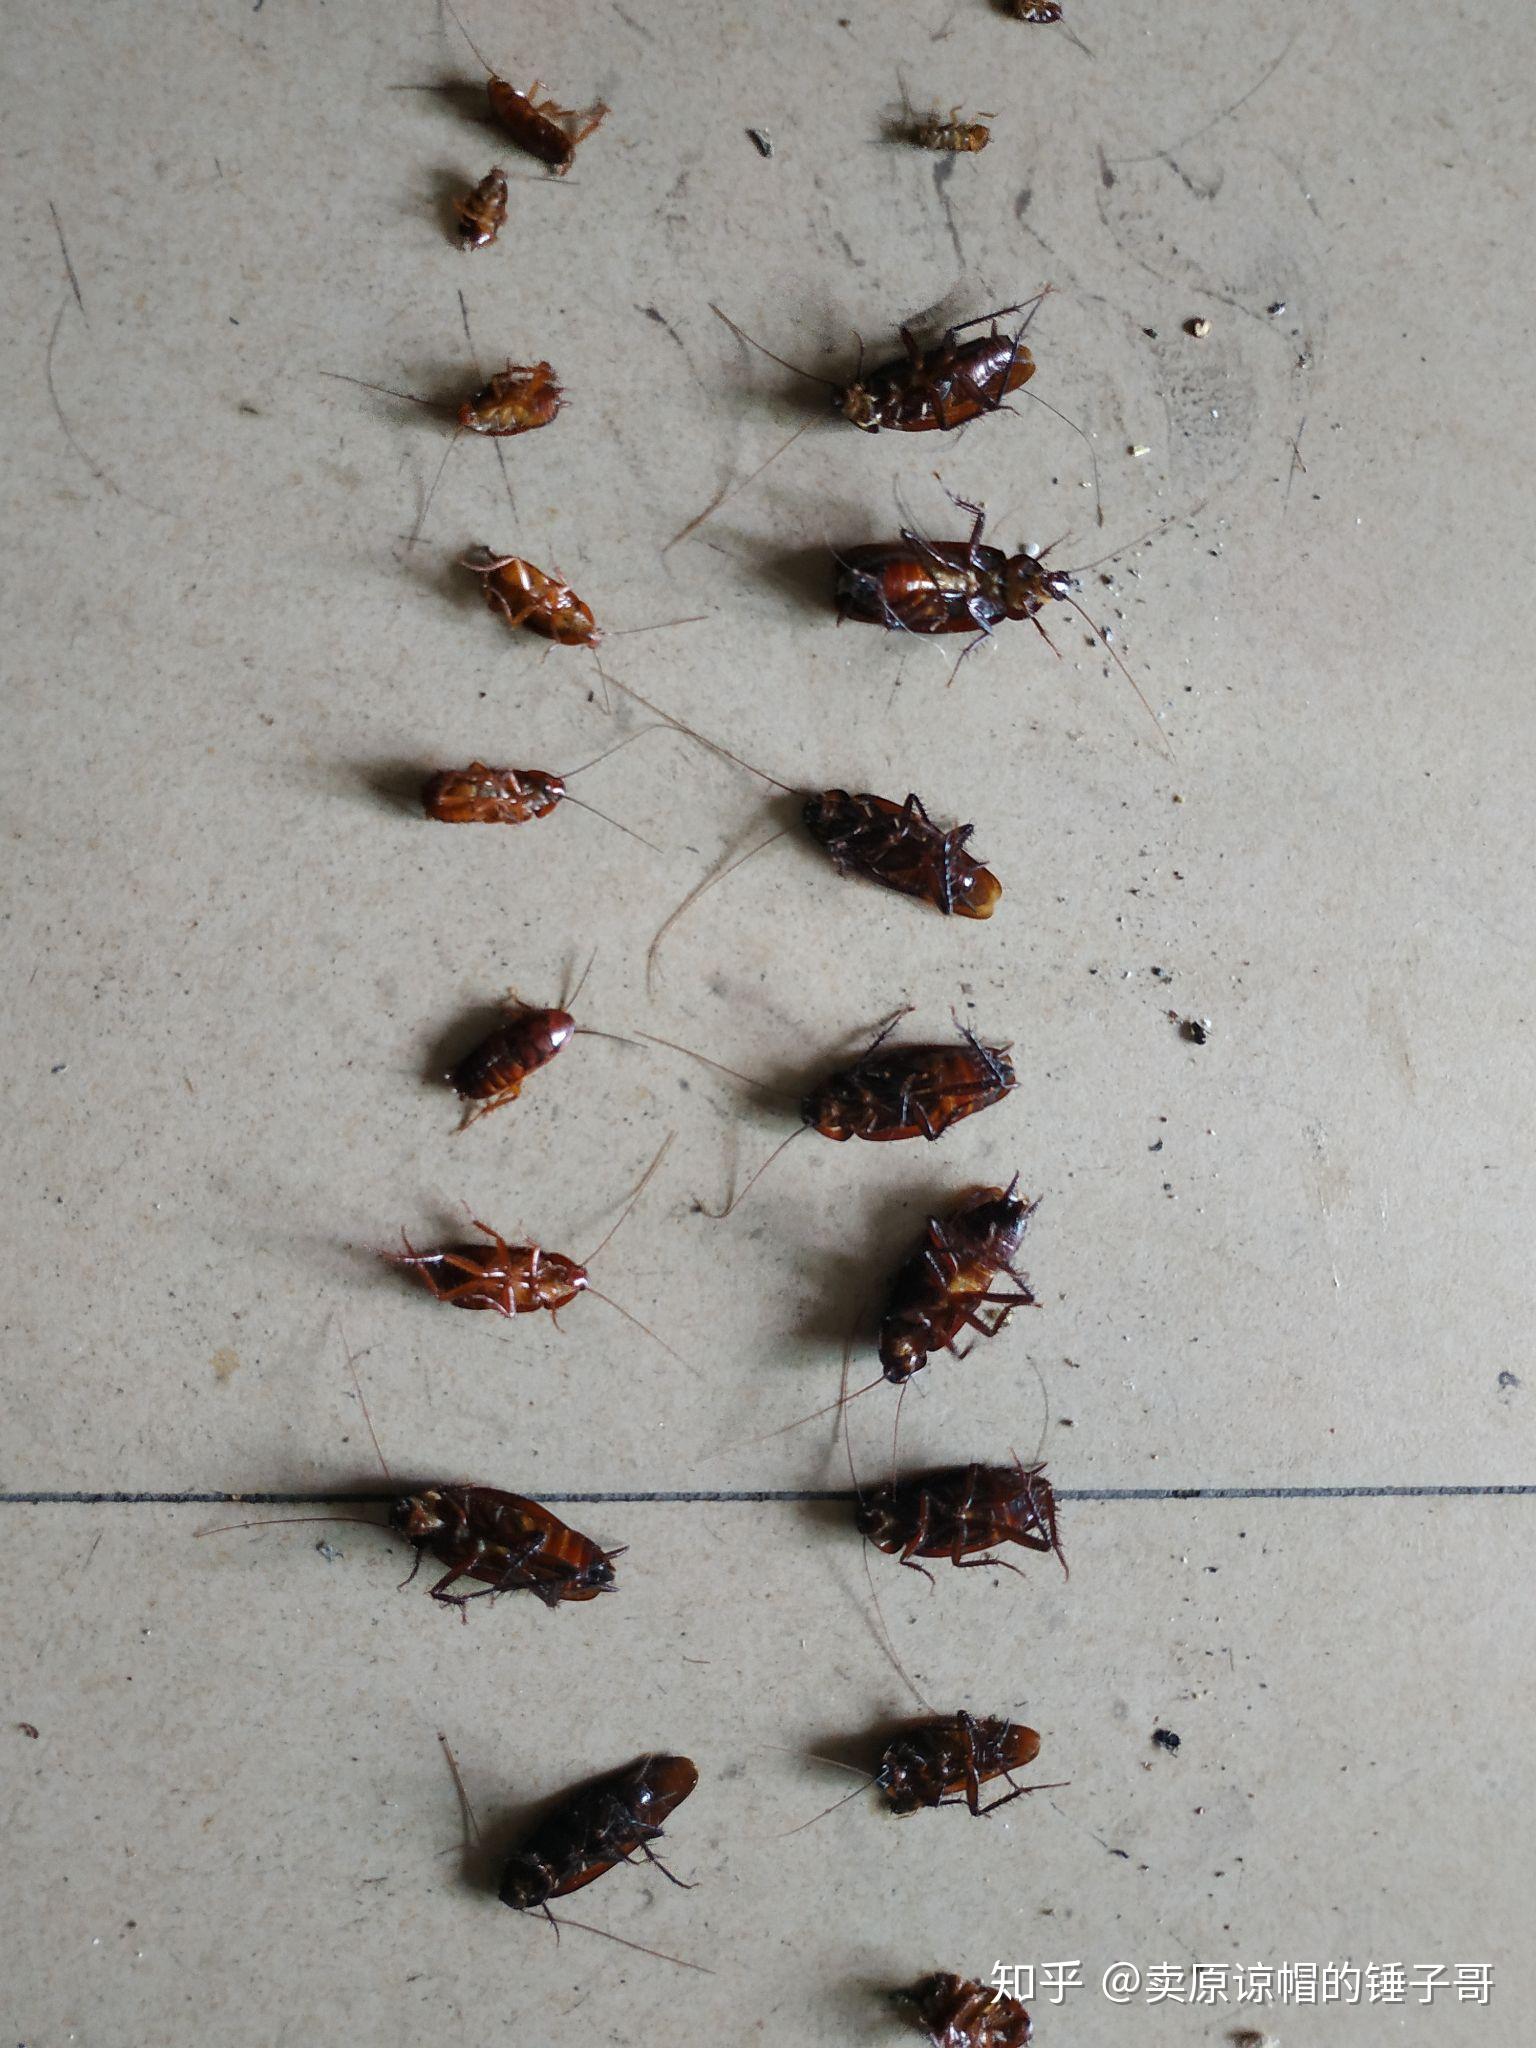 蟑螂图片高清大图 南方蟑螂照片真实→MAIGOO图库